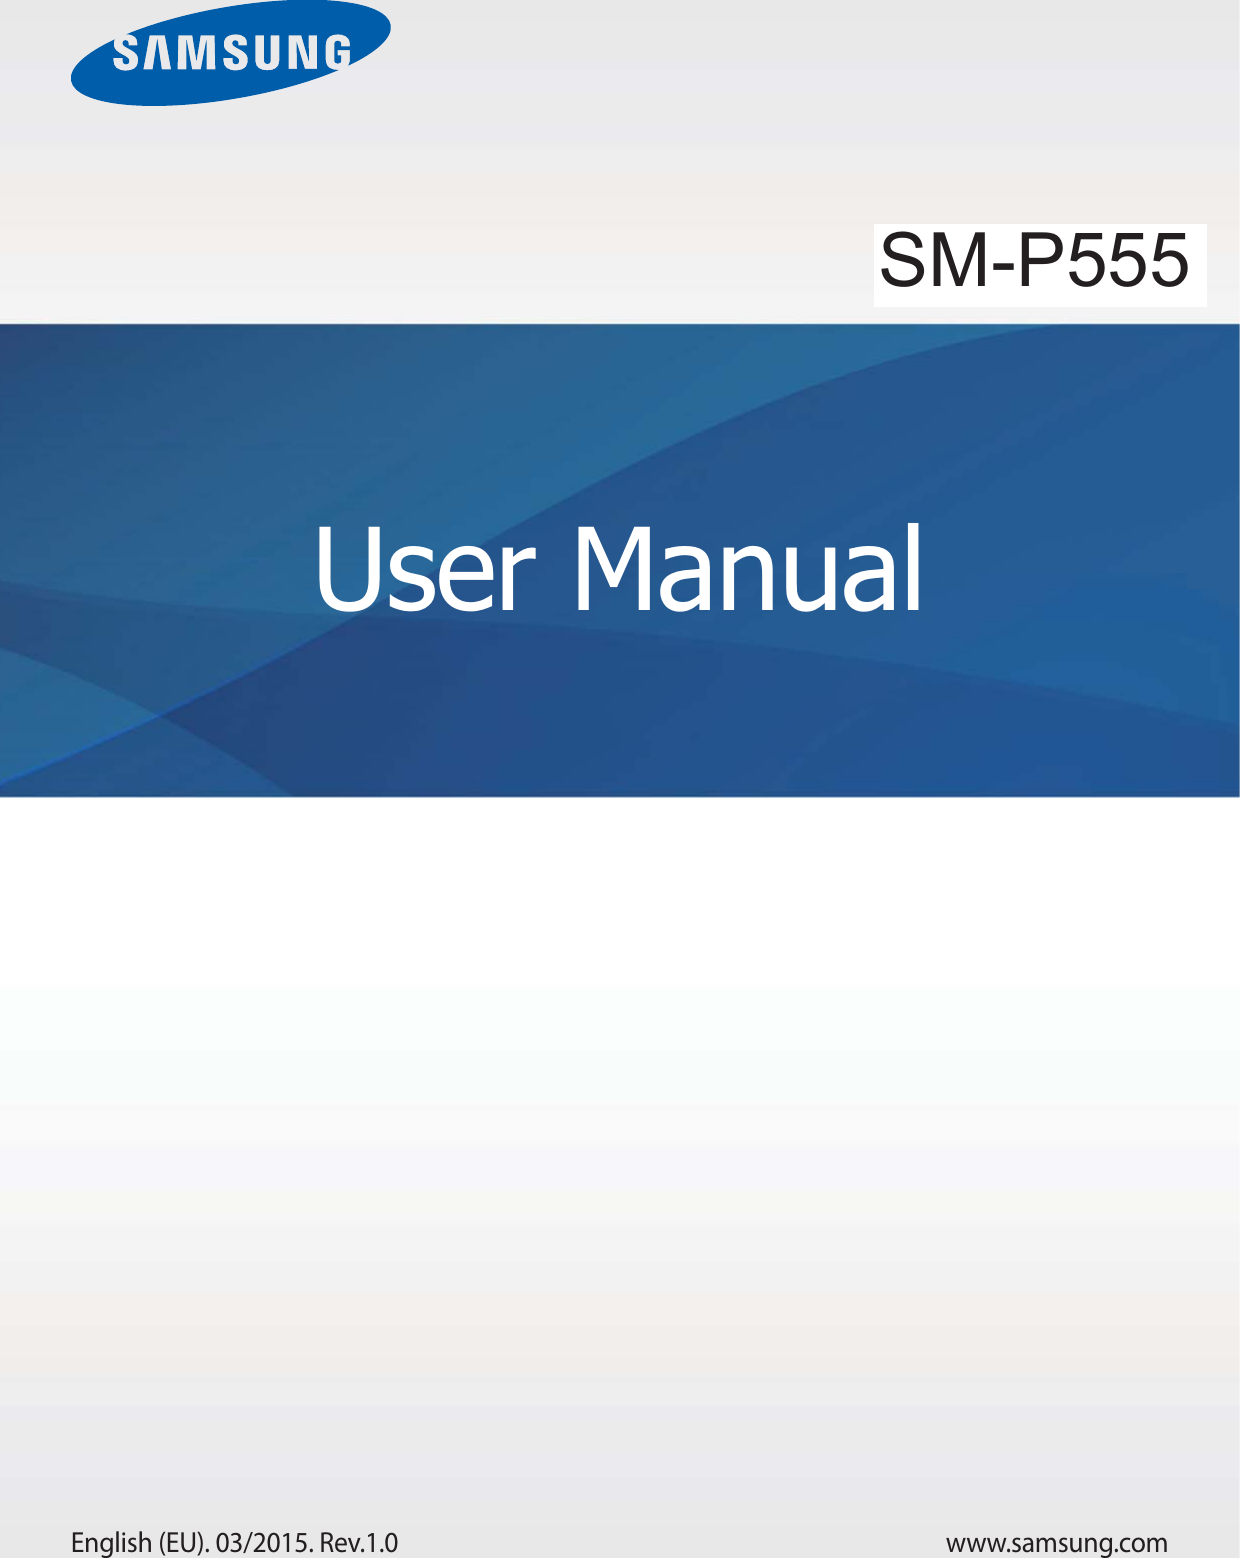 www.samsung.comUser ManualSM-T555English (EU). 03/2015. Rev.1.0SM-P555